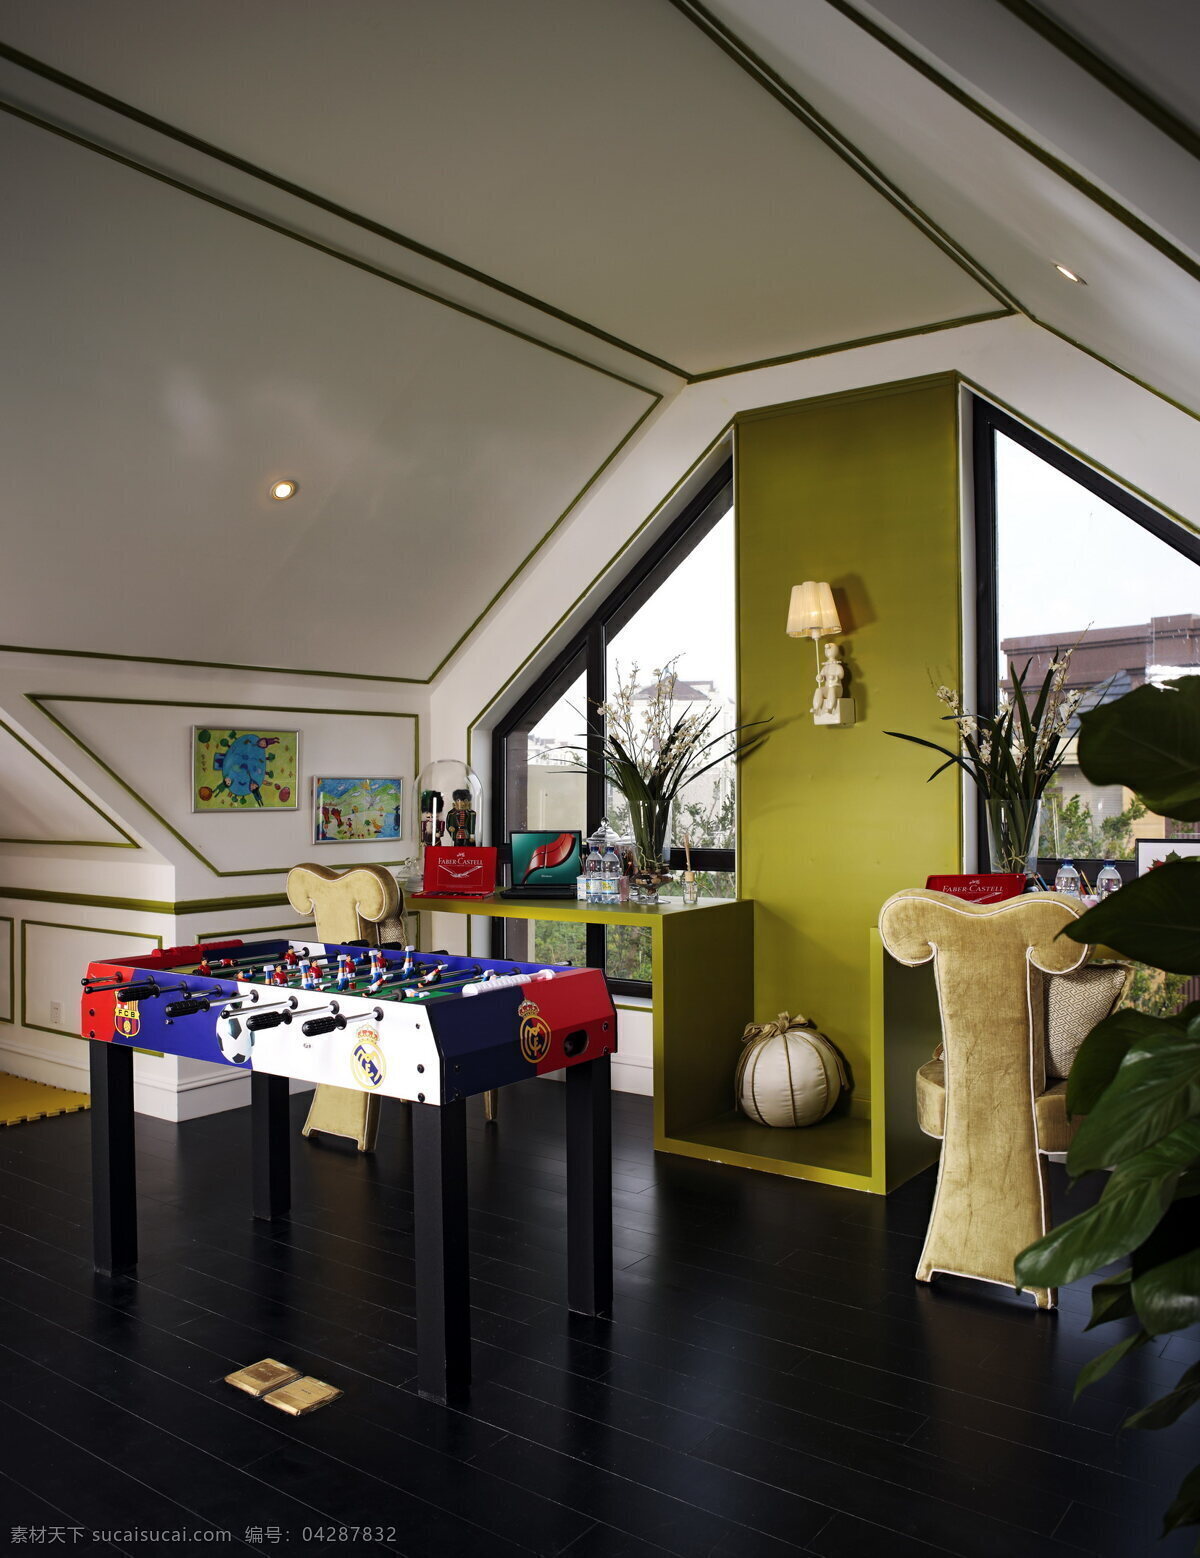 创意 室内 绿色 背景 墙 设计图 家居 家居生活 室内设计 装修 家具 装修设计 环境设计 背景墙